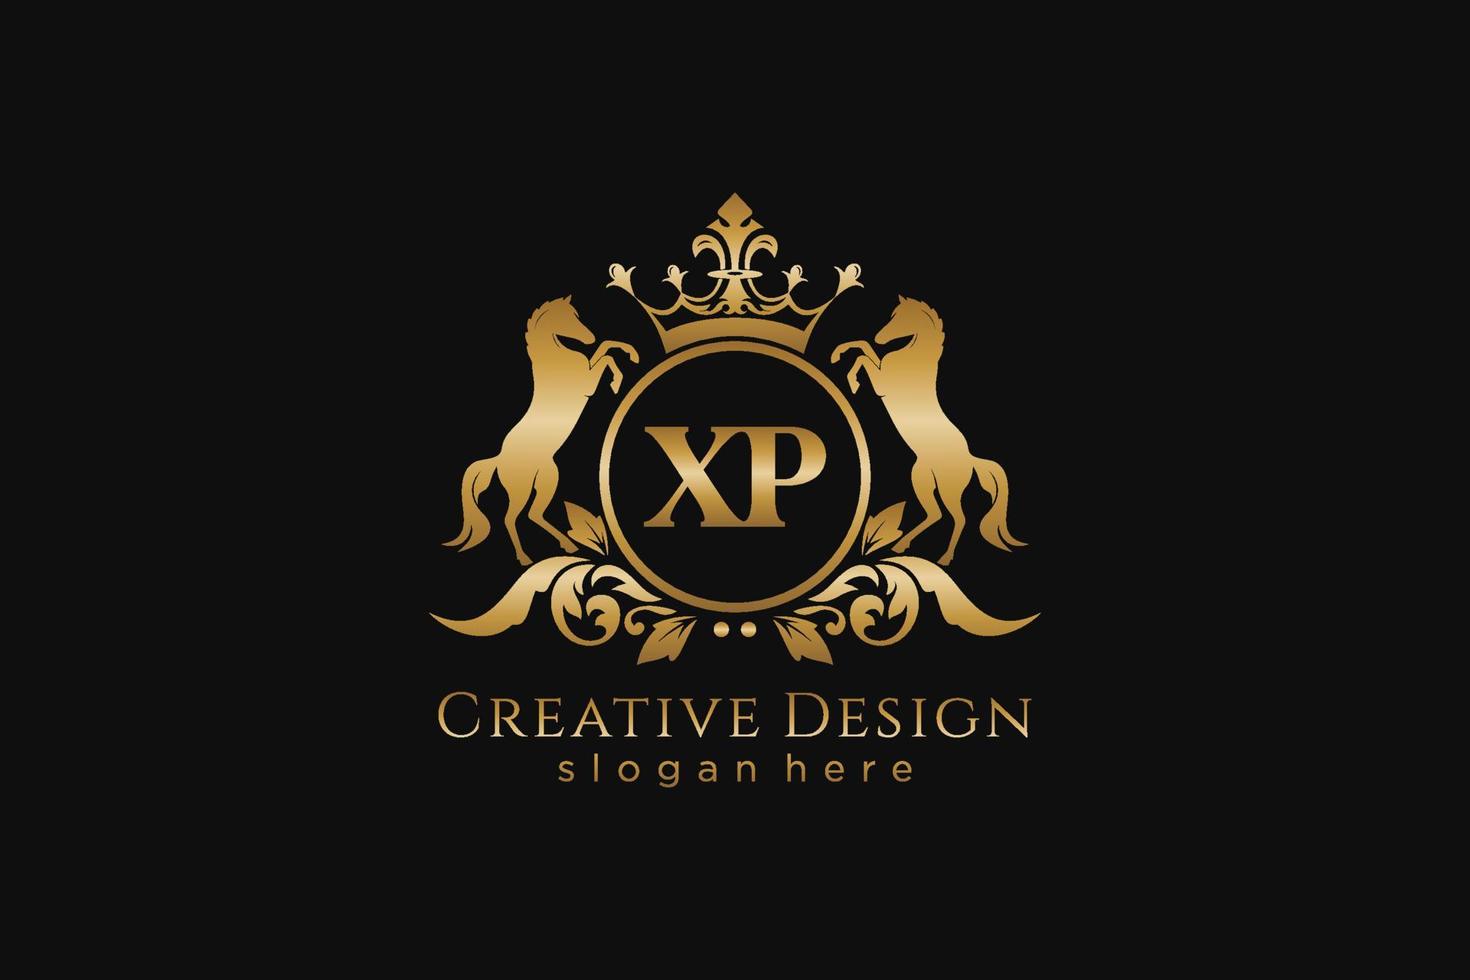 Anfangs-XP-Retro-Goldwappen mit Kreis und zwei Pferden, Abzeichenvorlage mit Schriftrollen und Königskrone – perfekt für luxuriöse Branding-Projekte vektor